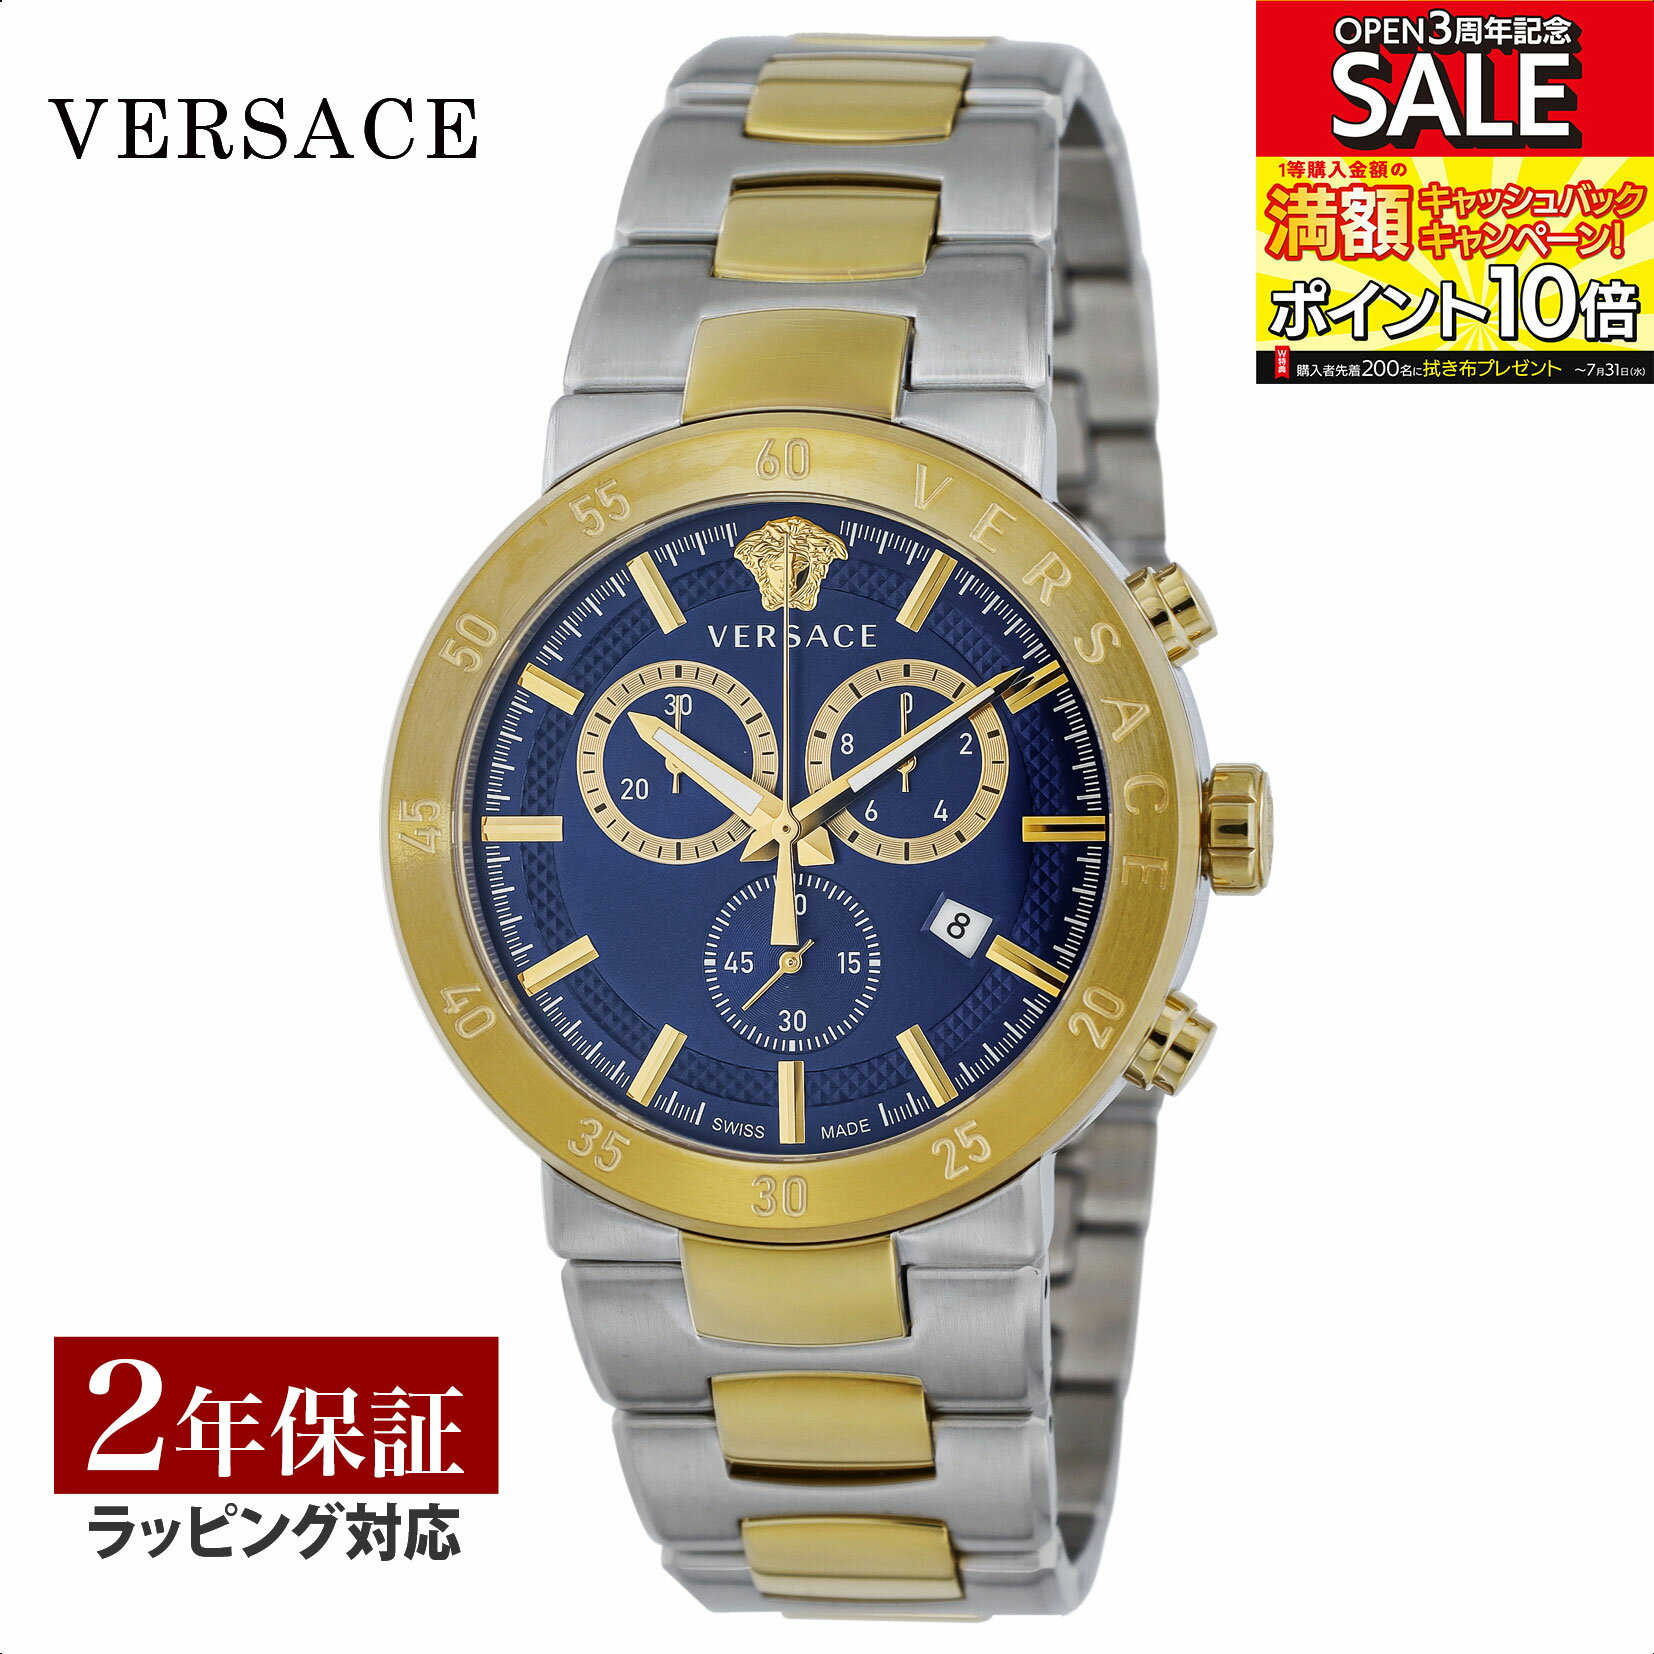 ヴェルサーチェ 腕時計（メンズ） ヴェルサーチェ VERSACE メンズ 時計 アーバンミスティーク Urban Mystique クォーツ ブルー VEPY00720 腕時計 高級腕時計 ブランド